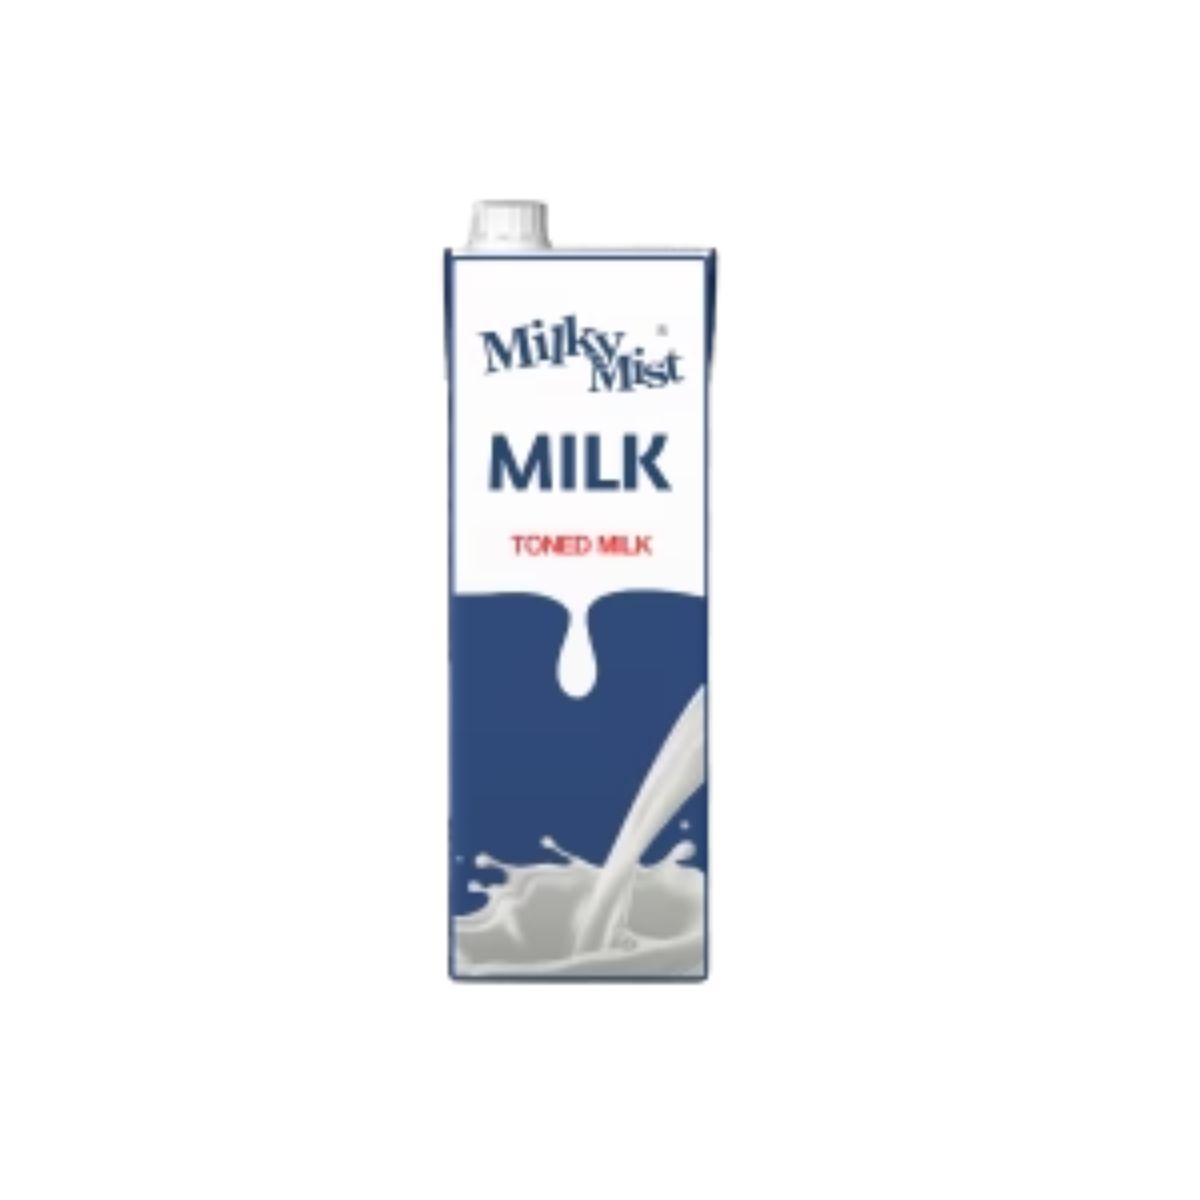 Milky Mist Milk - Toned Milk - 1L